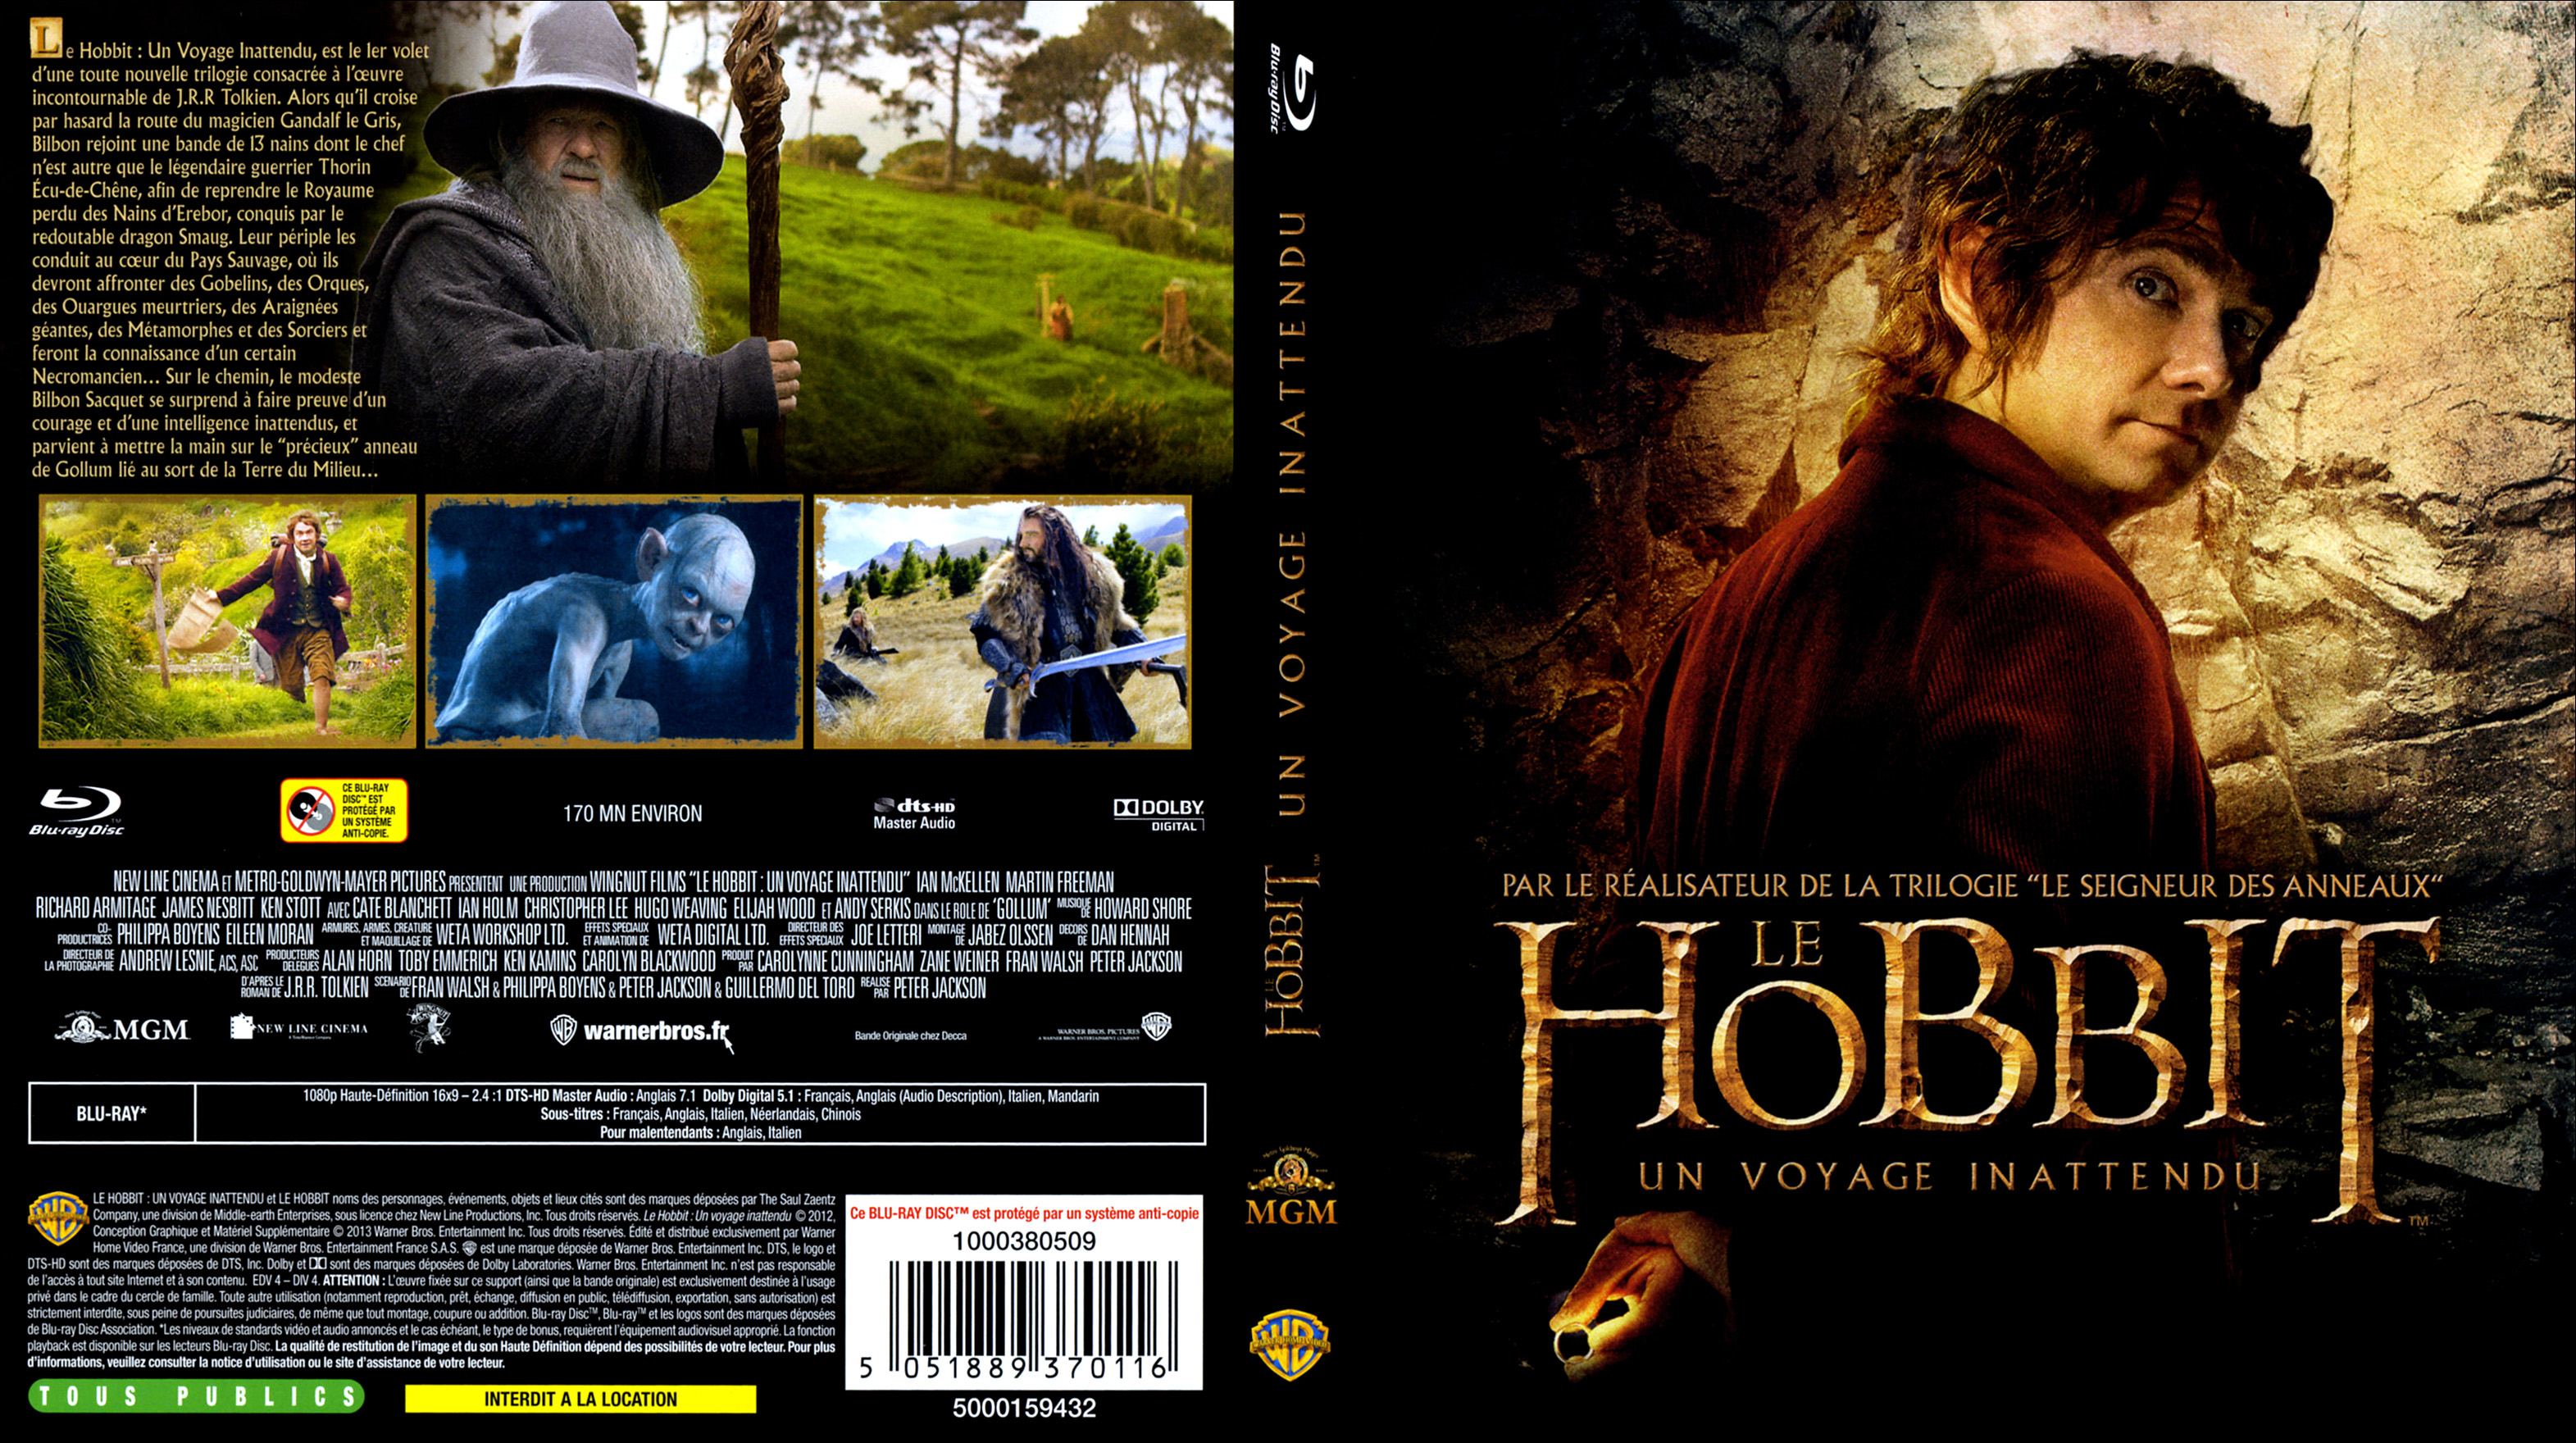 Jaquette DVD Le Hobbit un voyage inattendu (BLU-RAY)